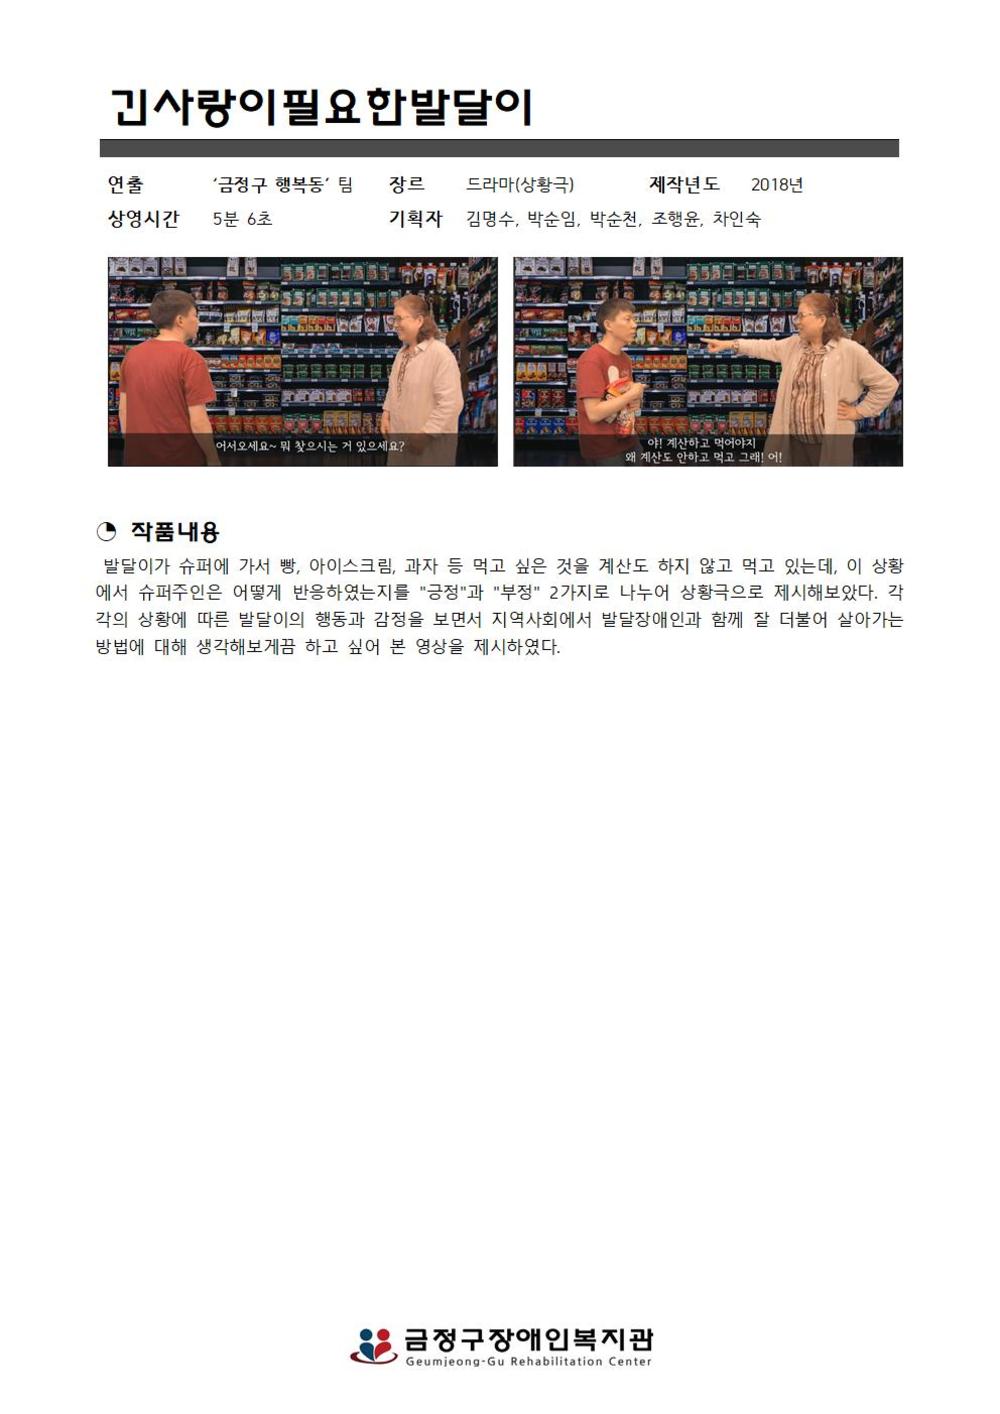 장애인식개선 미디어 제작단 프로그램 ‘금정구 행복동-2’ 미디어 택배(영화 상영) 신청 안내